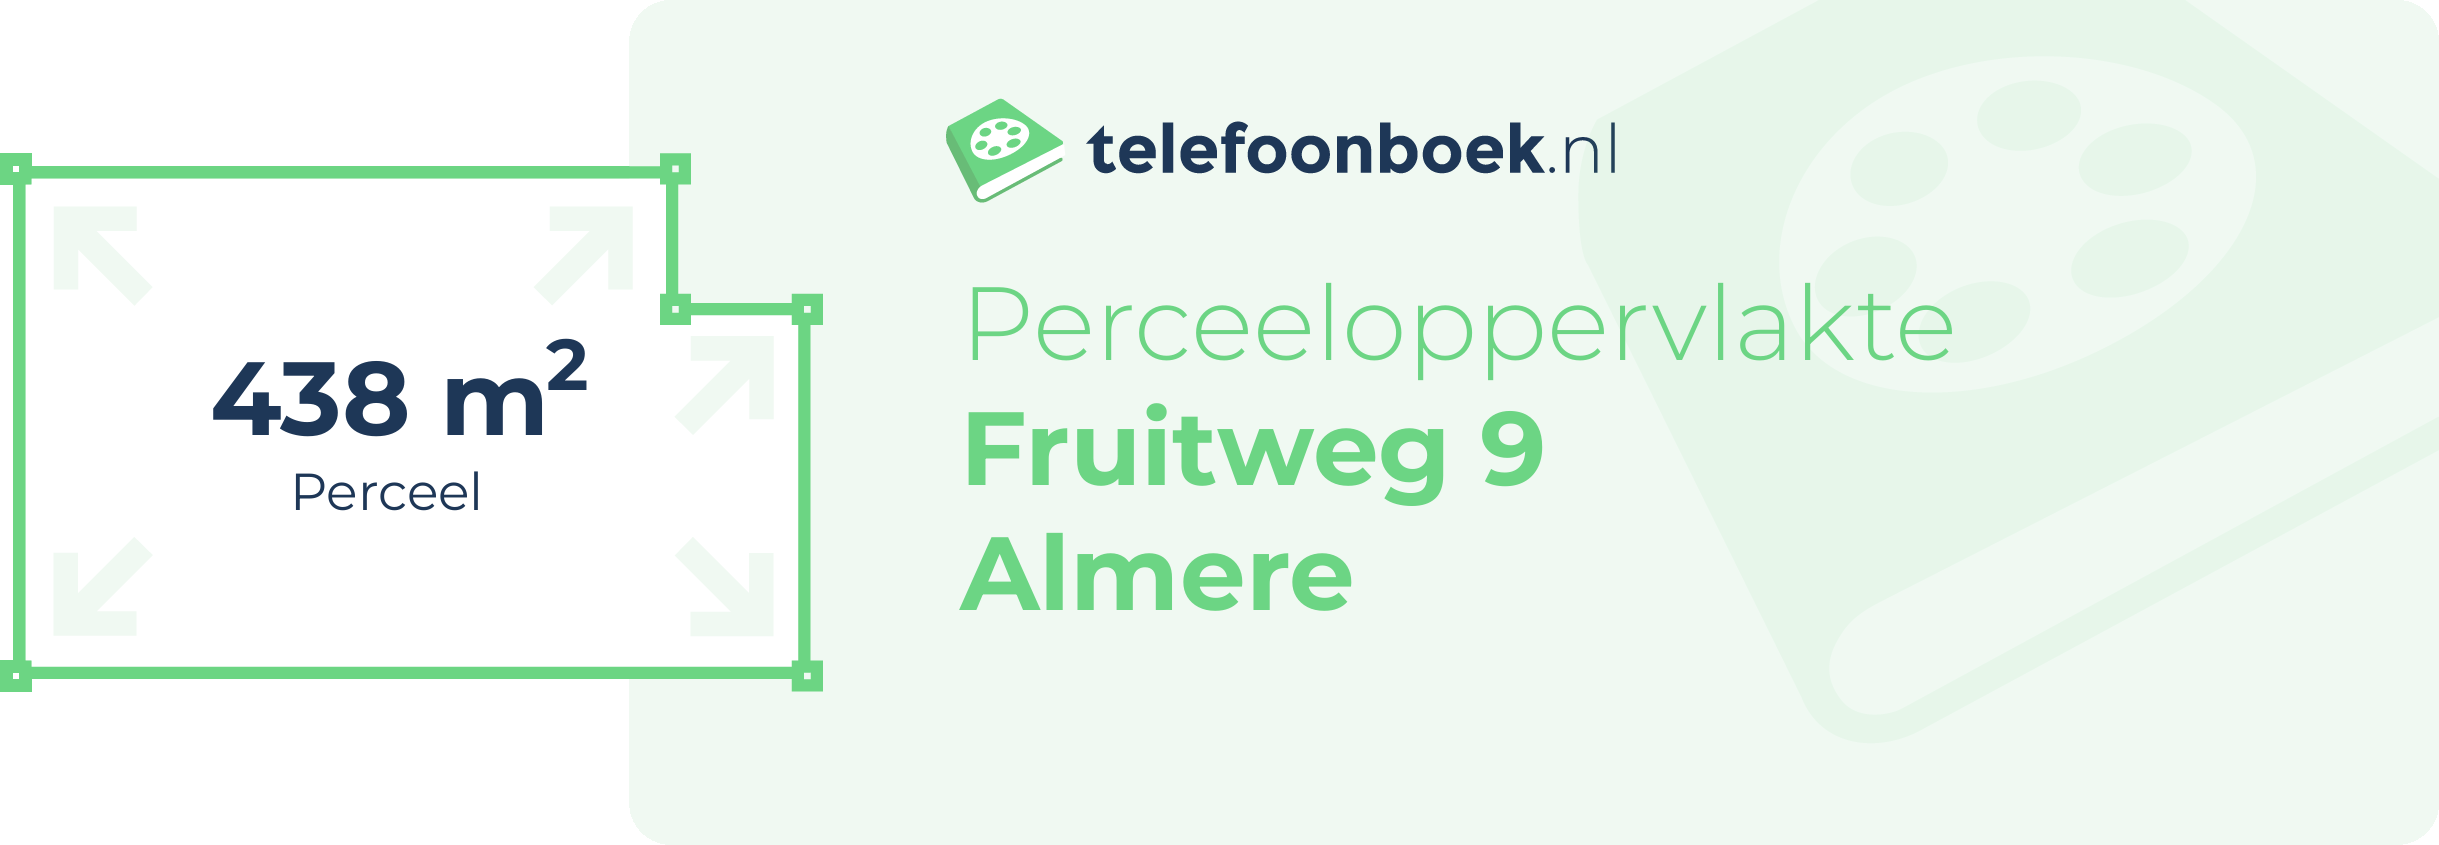 Perceeloppervlakte Fruitweg 9 Almere